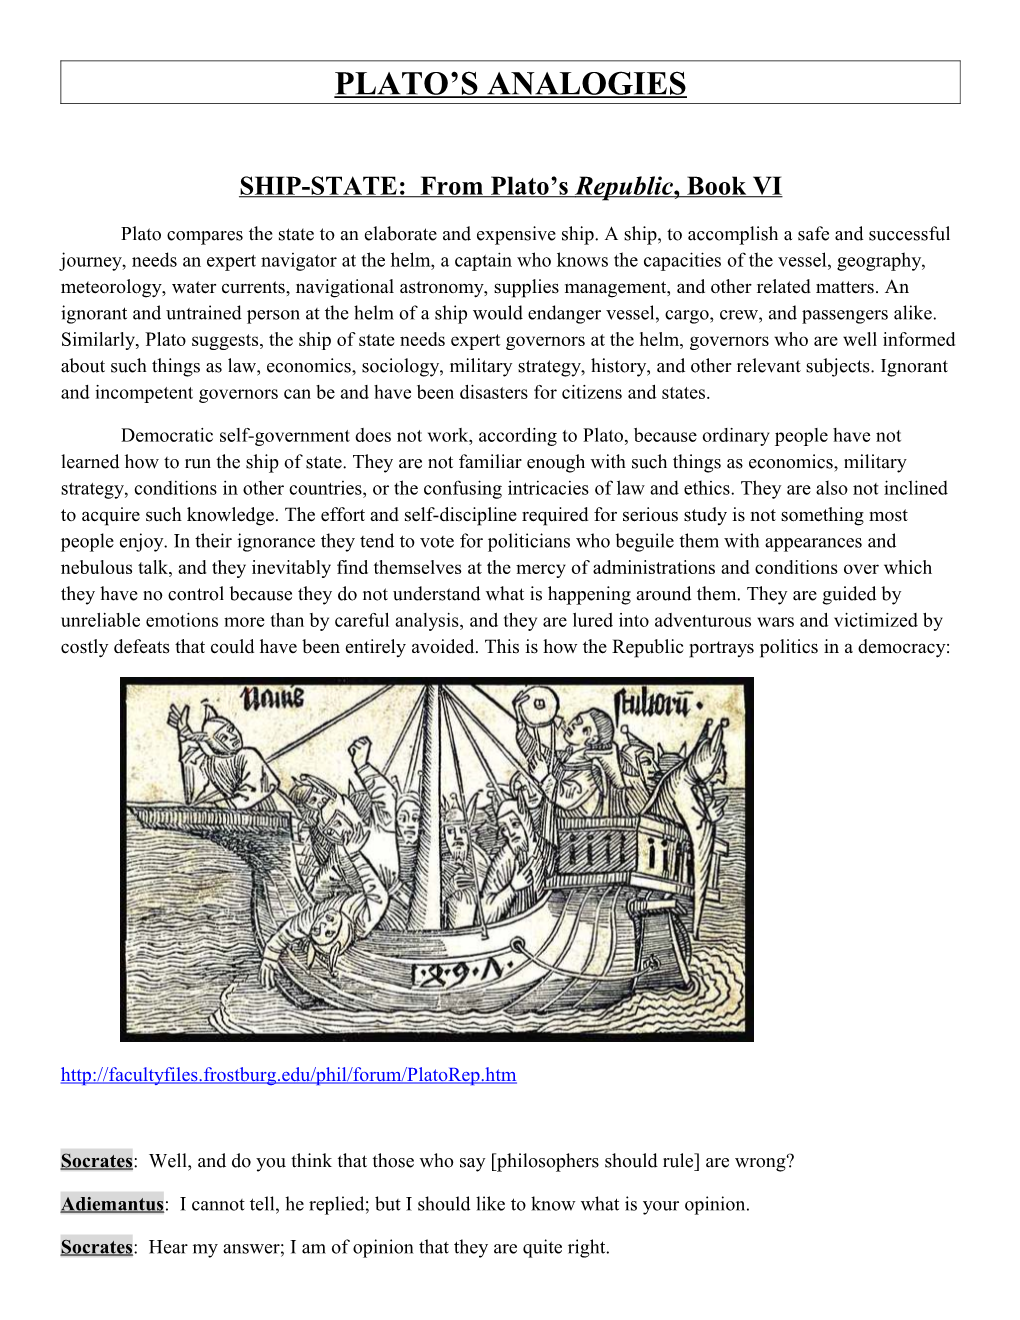 SHIP-STATE: from Plato S Republic, Book VI